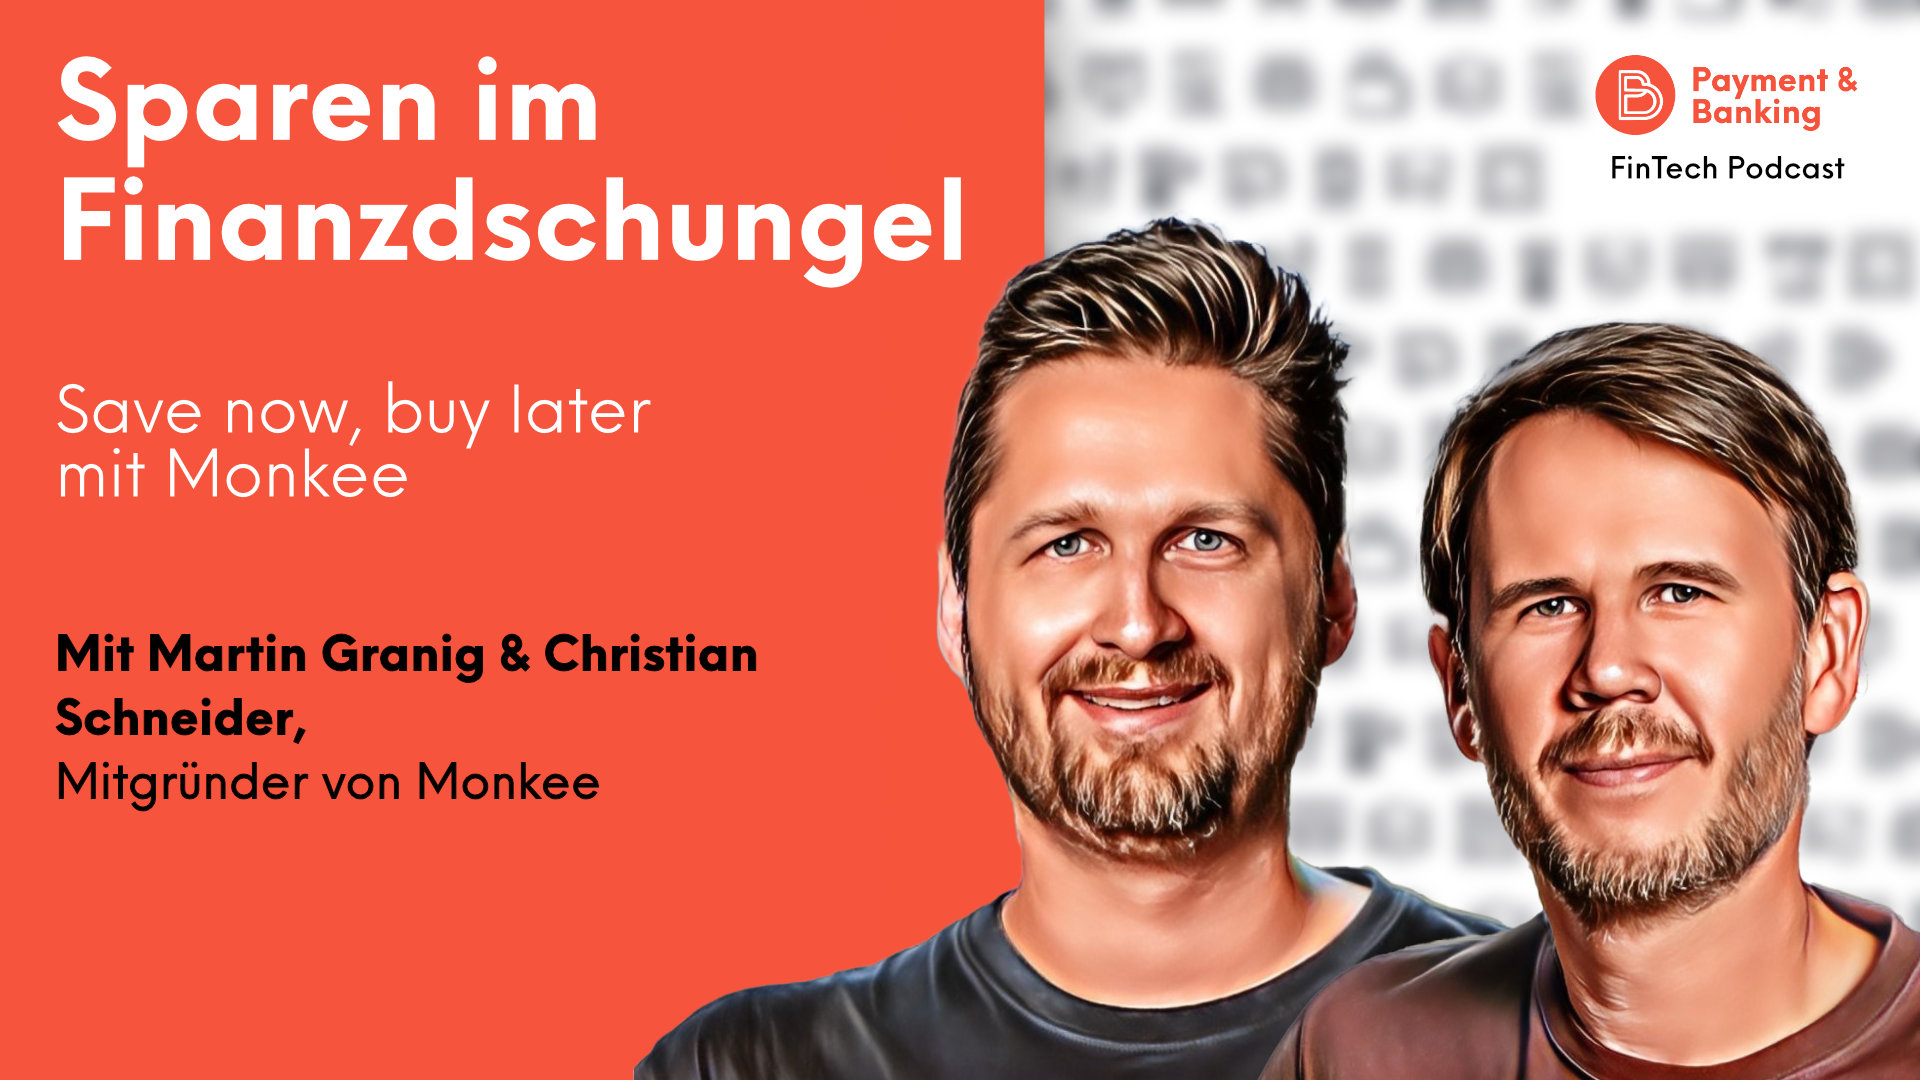 Martin Granig und Christian Schneider sind Mitgründer der Spar-App Monkee und erklären im Podcast ihr Geschäftsmodell und ihre Vision vom digitalen Sparschwein.